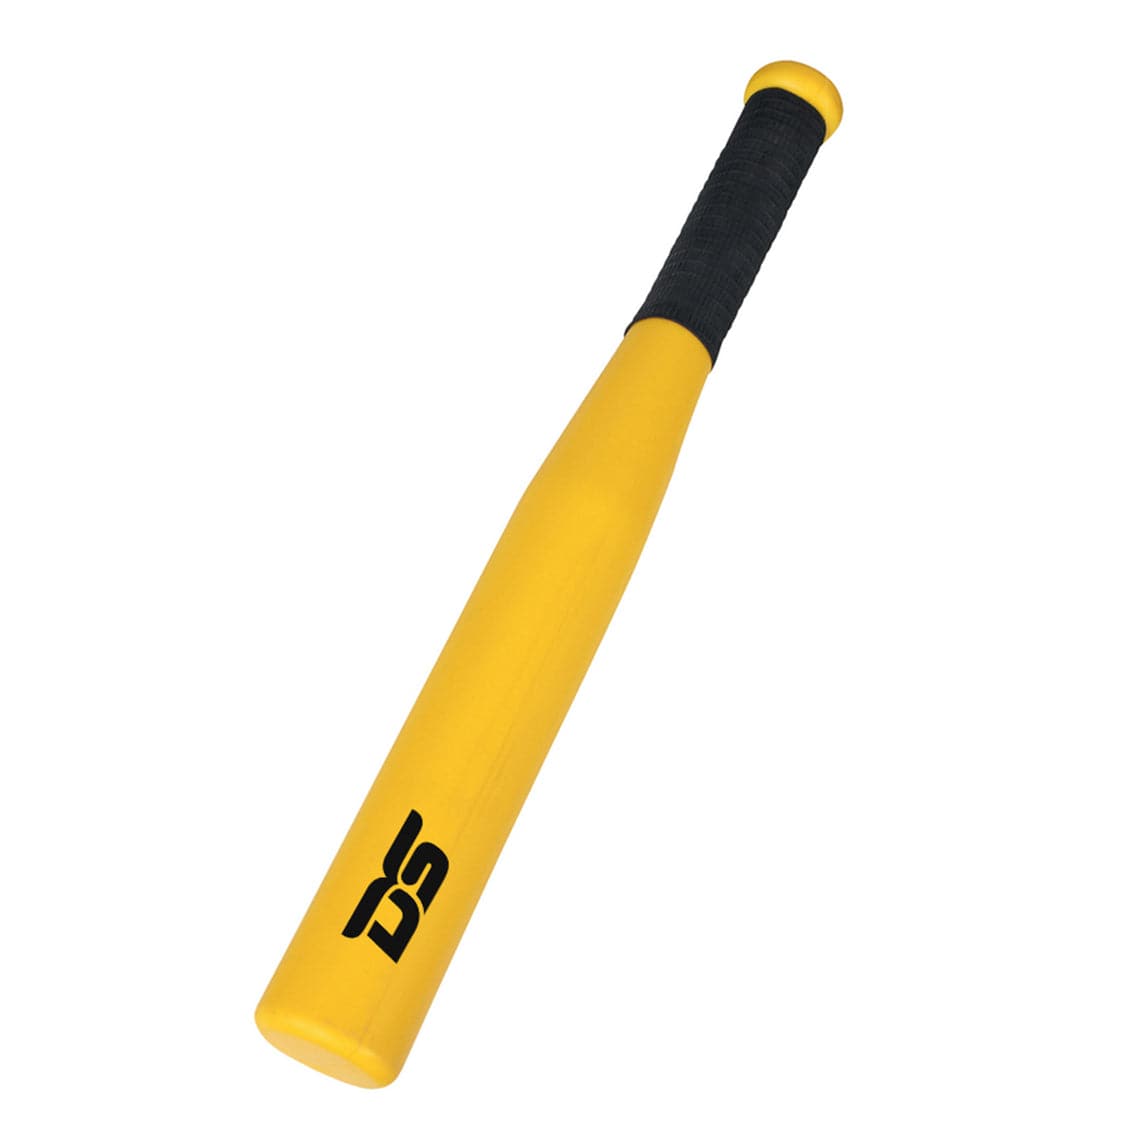 DS Rounders Plastic Bat - 18" - Athletix.ae